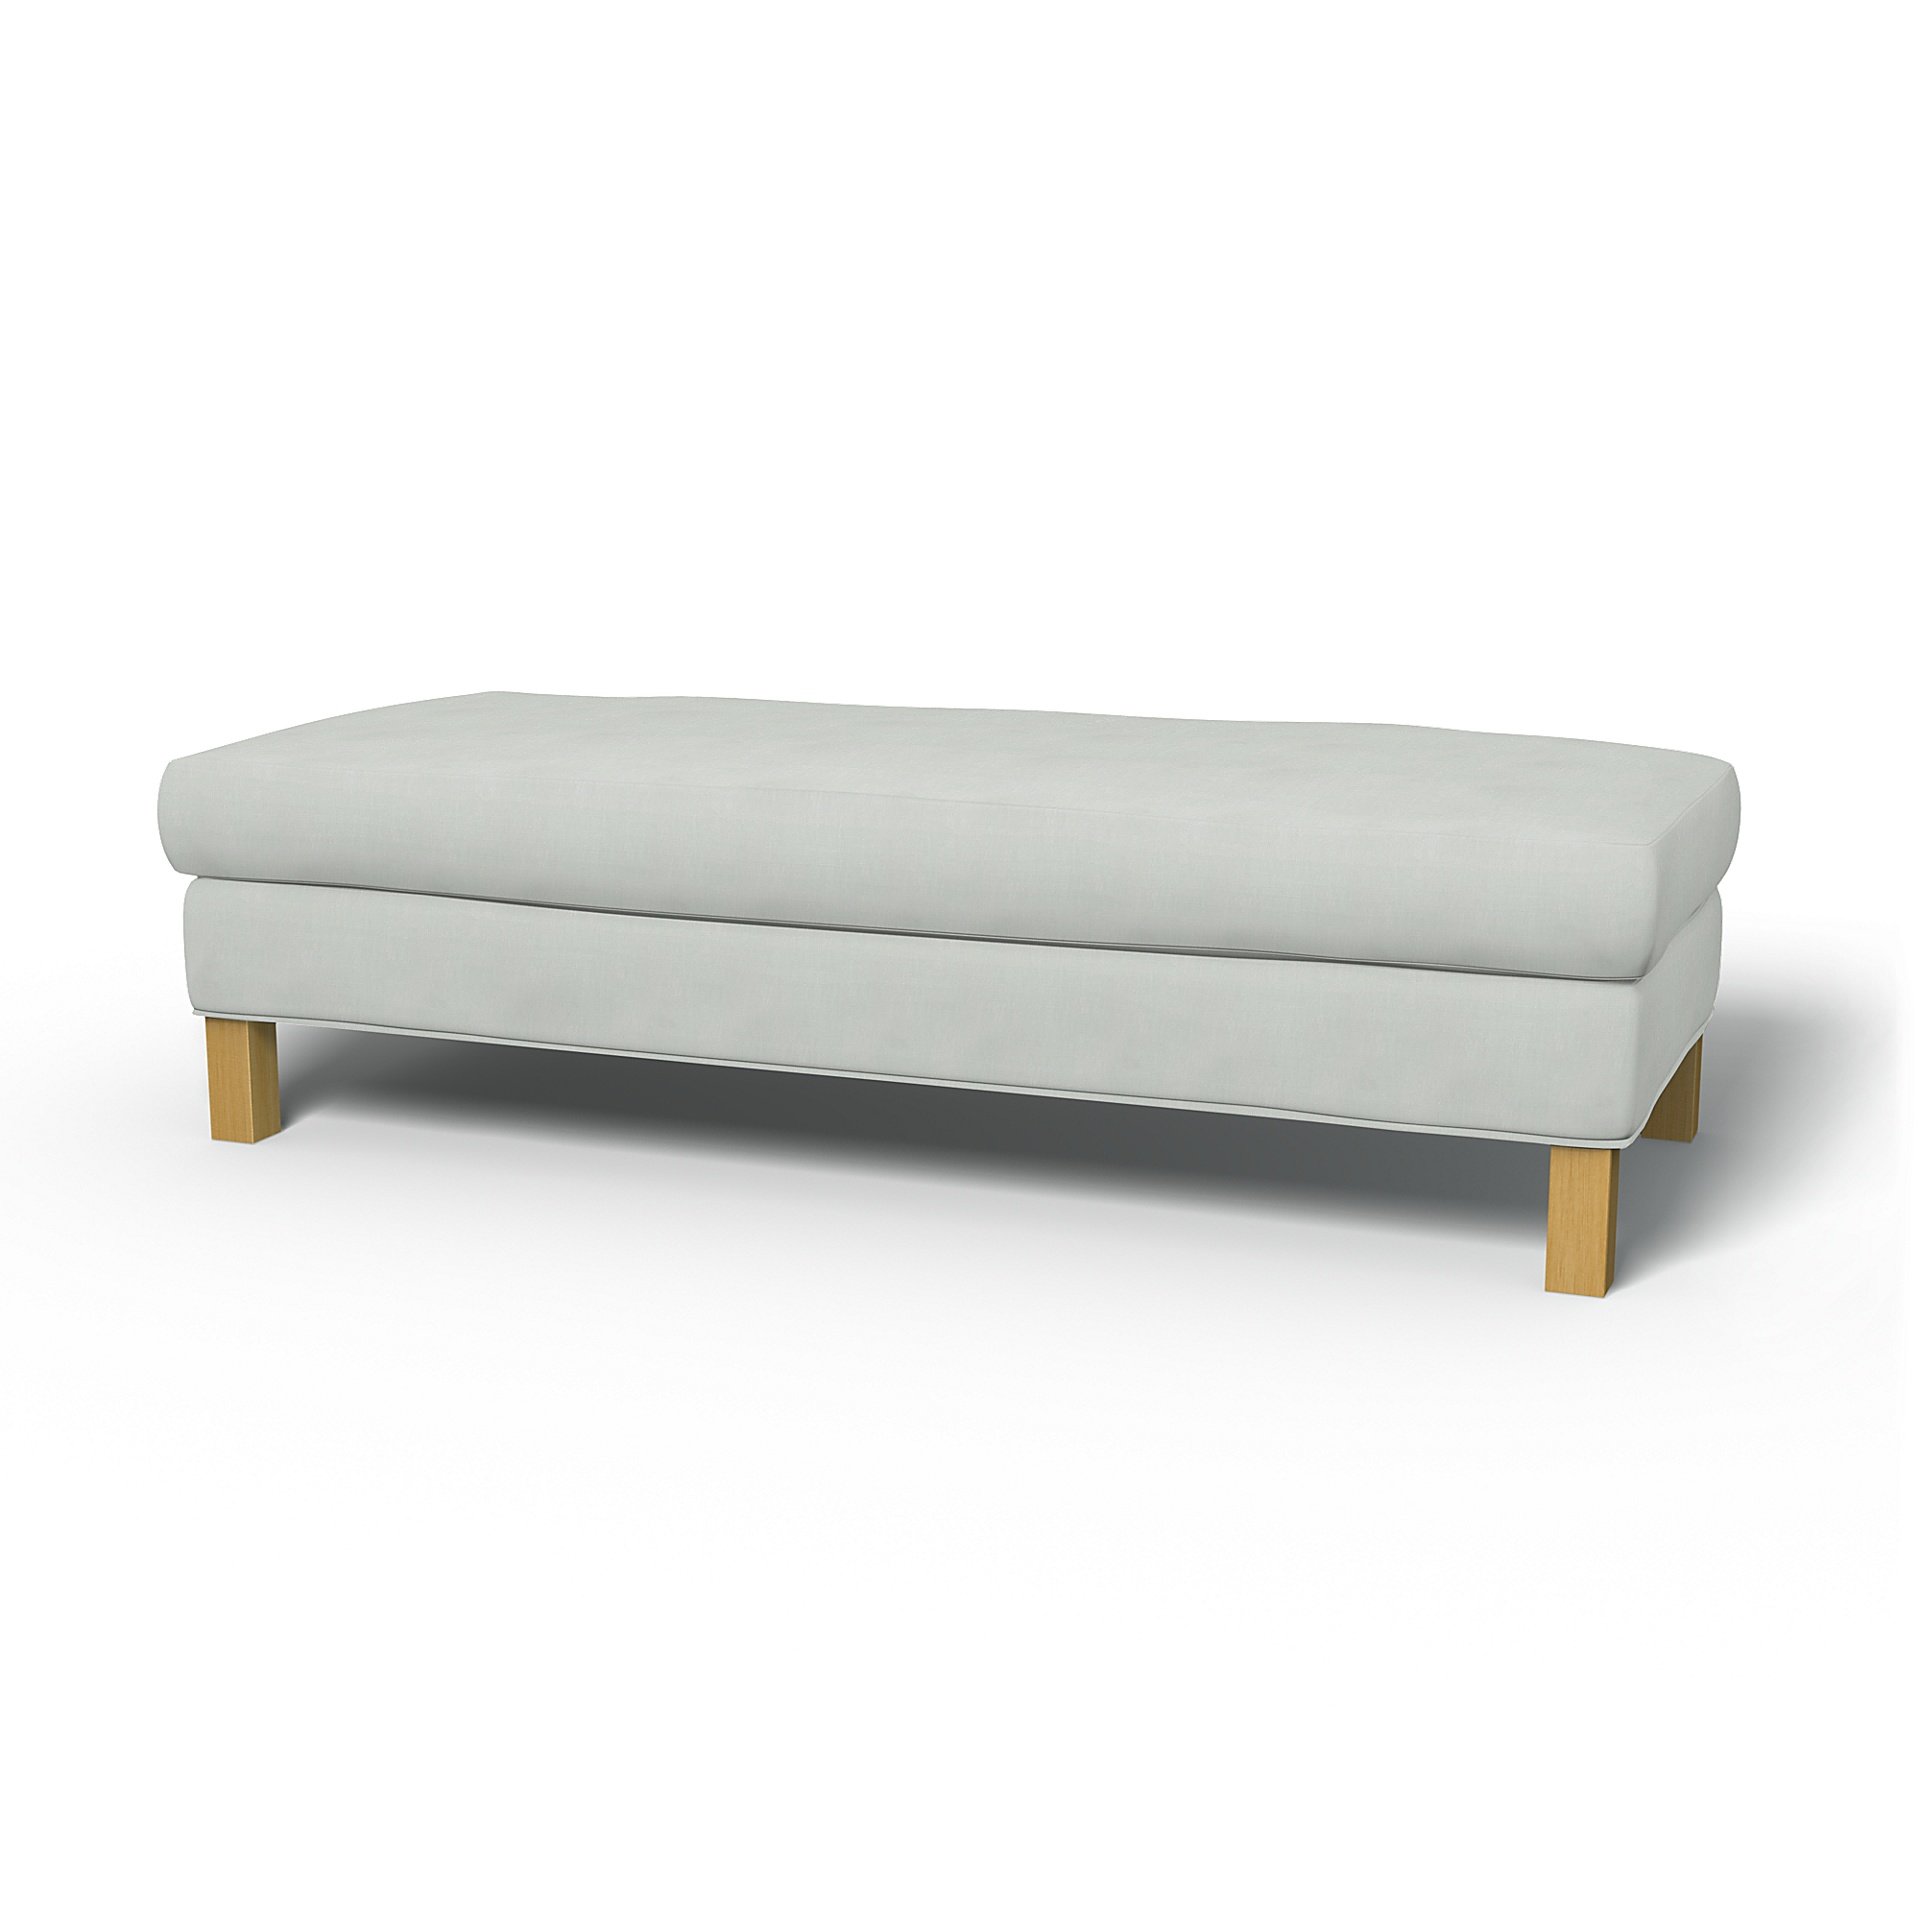 IKEA - Karlanda Bench Cover, Silver Grey, Linen - Bemz